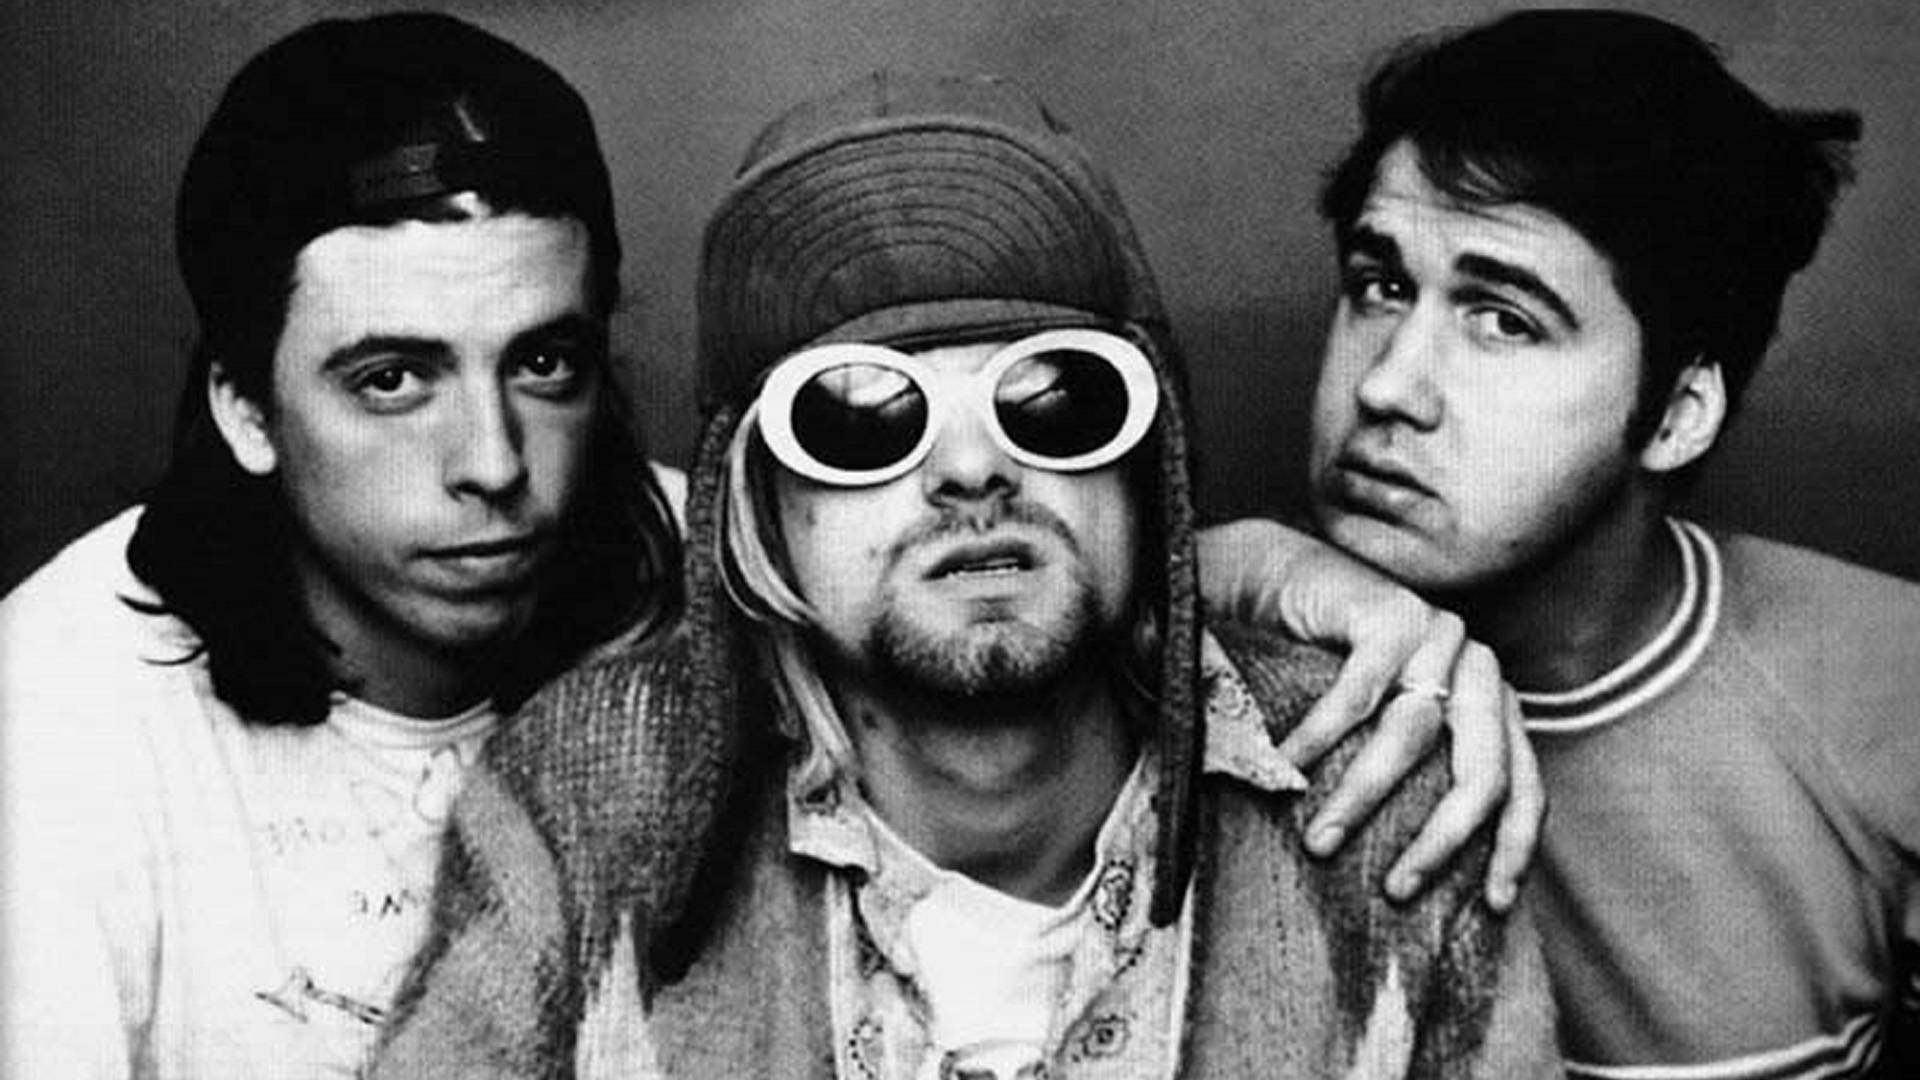 Nirvanabandmedlemmar. Wallpaper